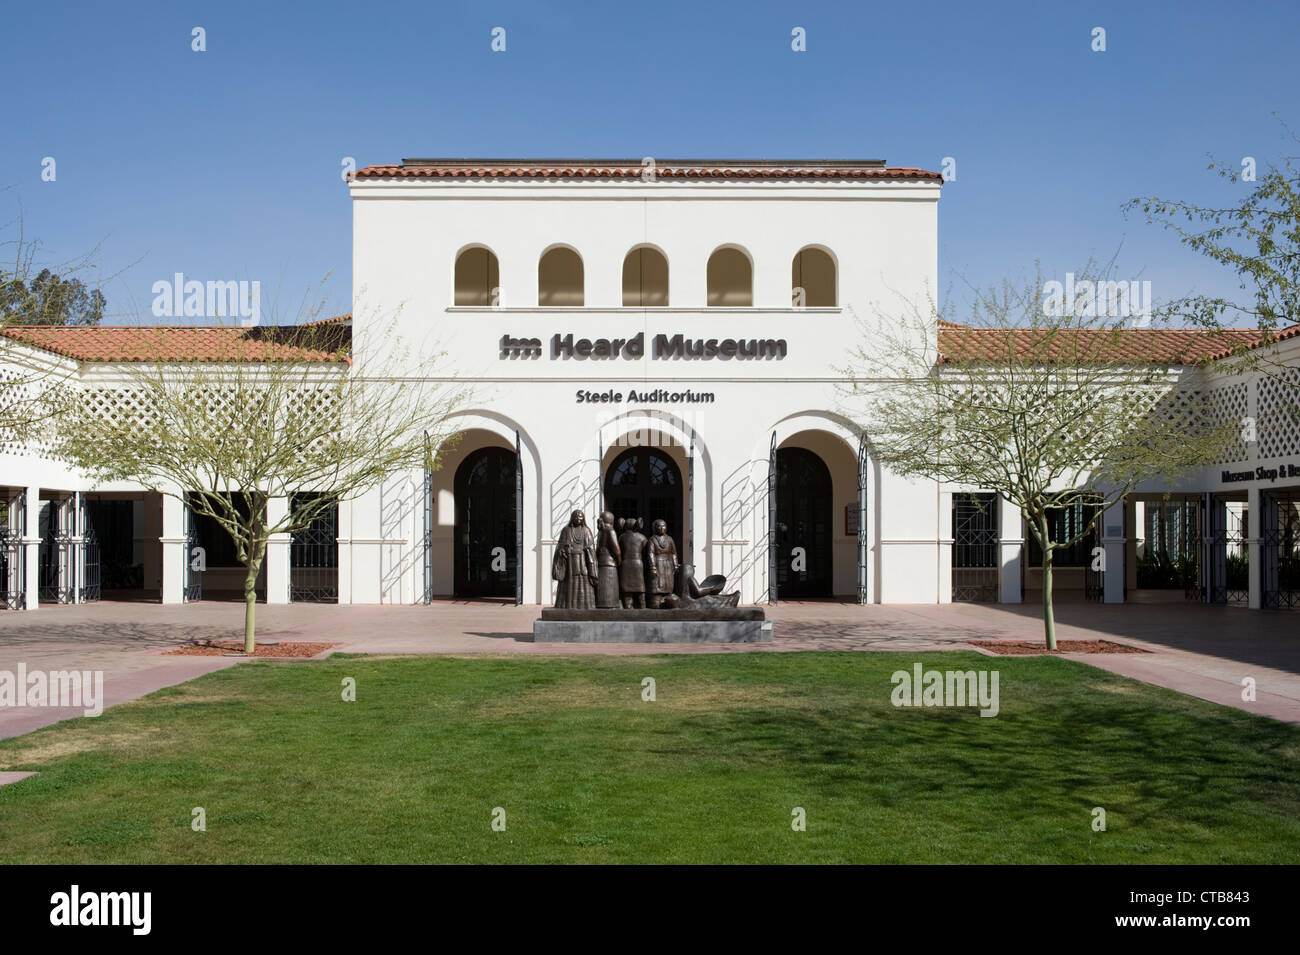 La fachada del Museo Heard, especialista en cultura y arte de los indios americanos, ubicado cerca del centro de la ciudad de Phoenix, Arizona, EE.UU. Foto de stock